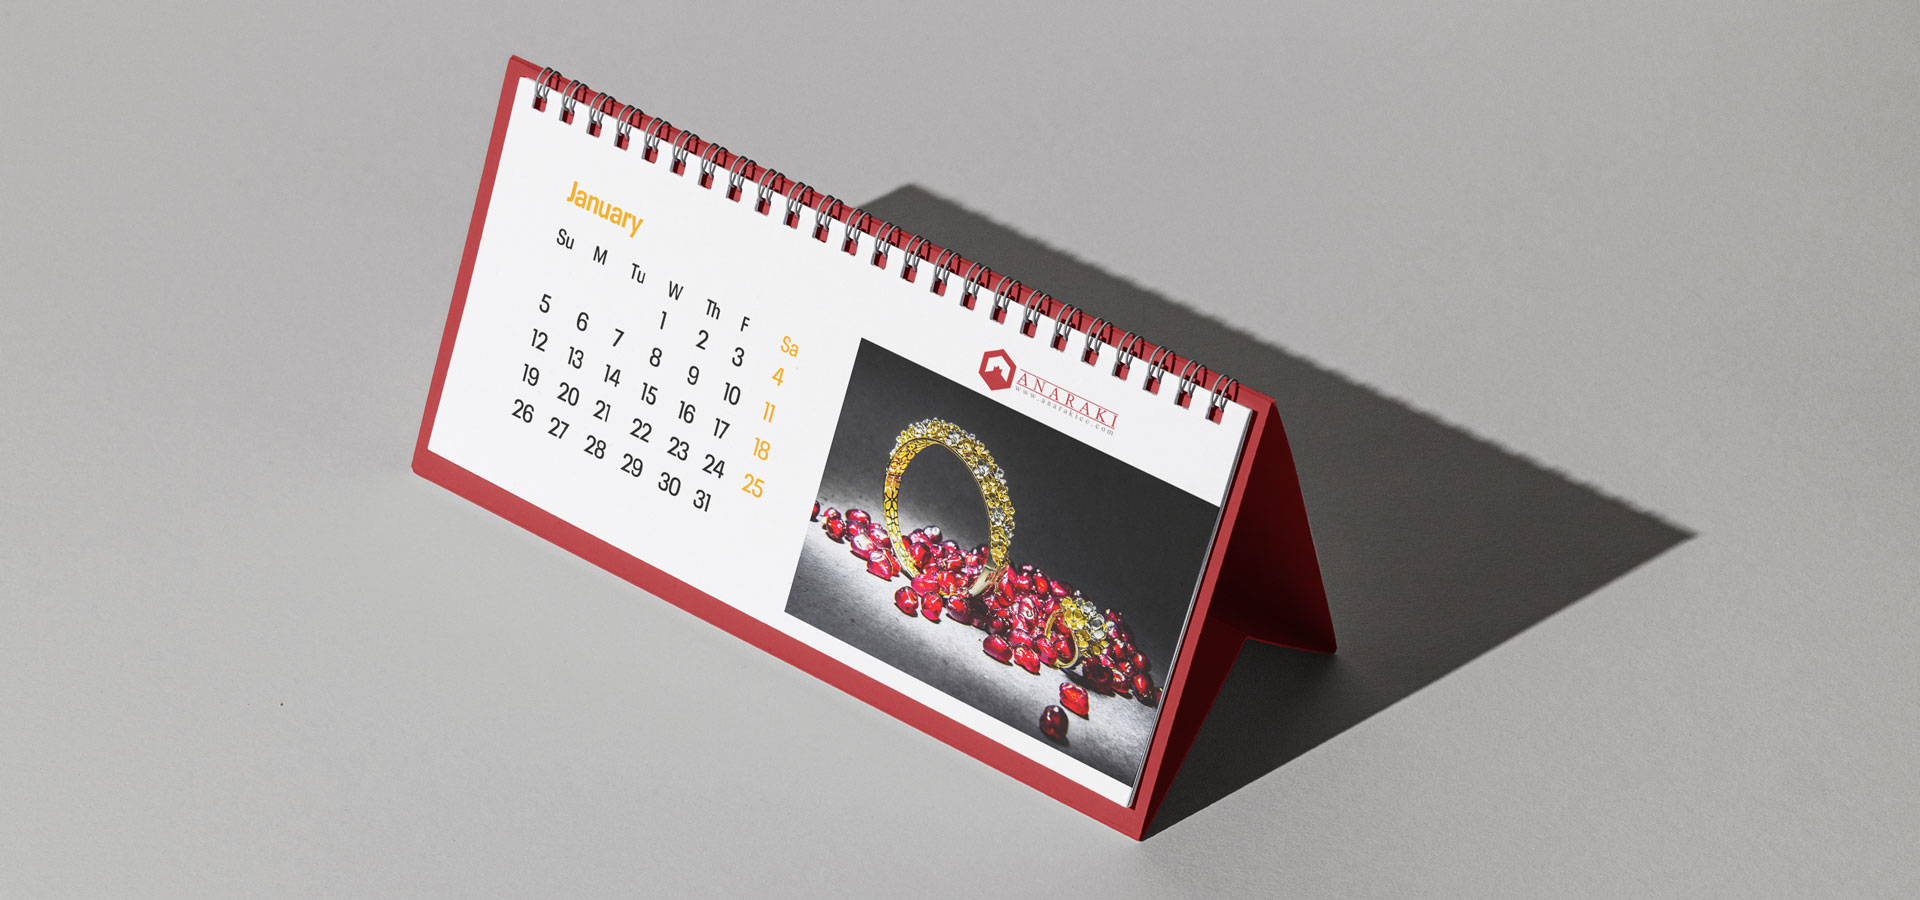 Anaraki - Branding, Calendar Design